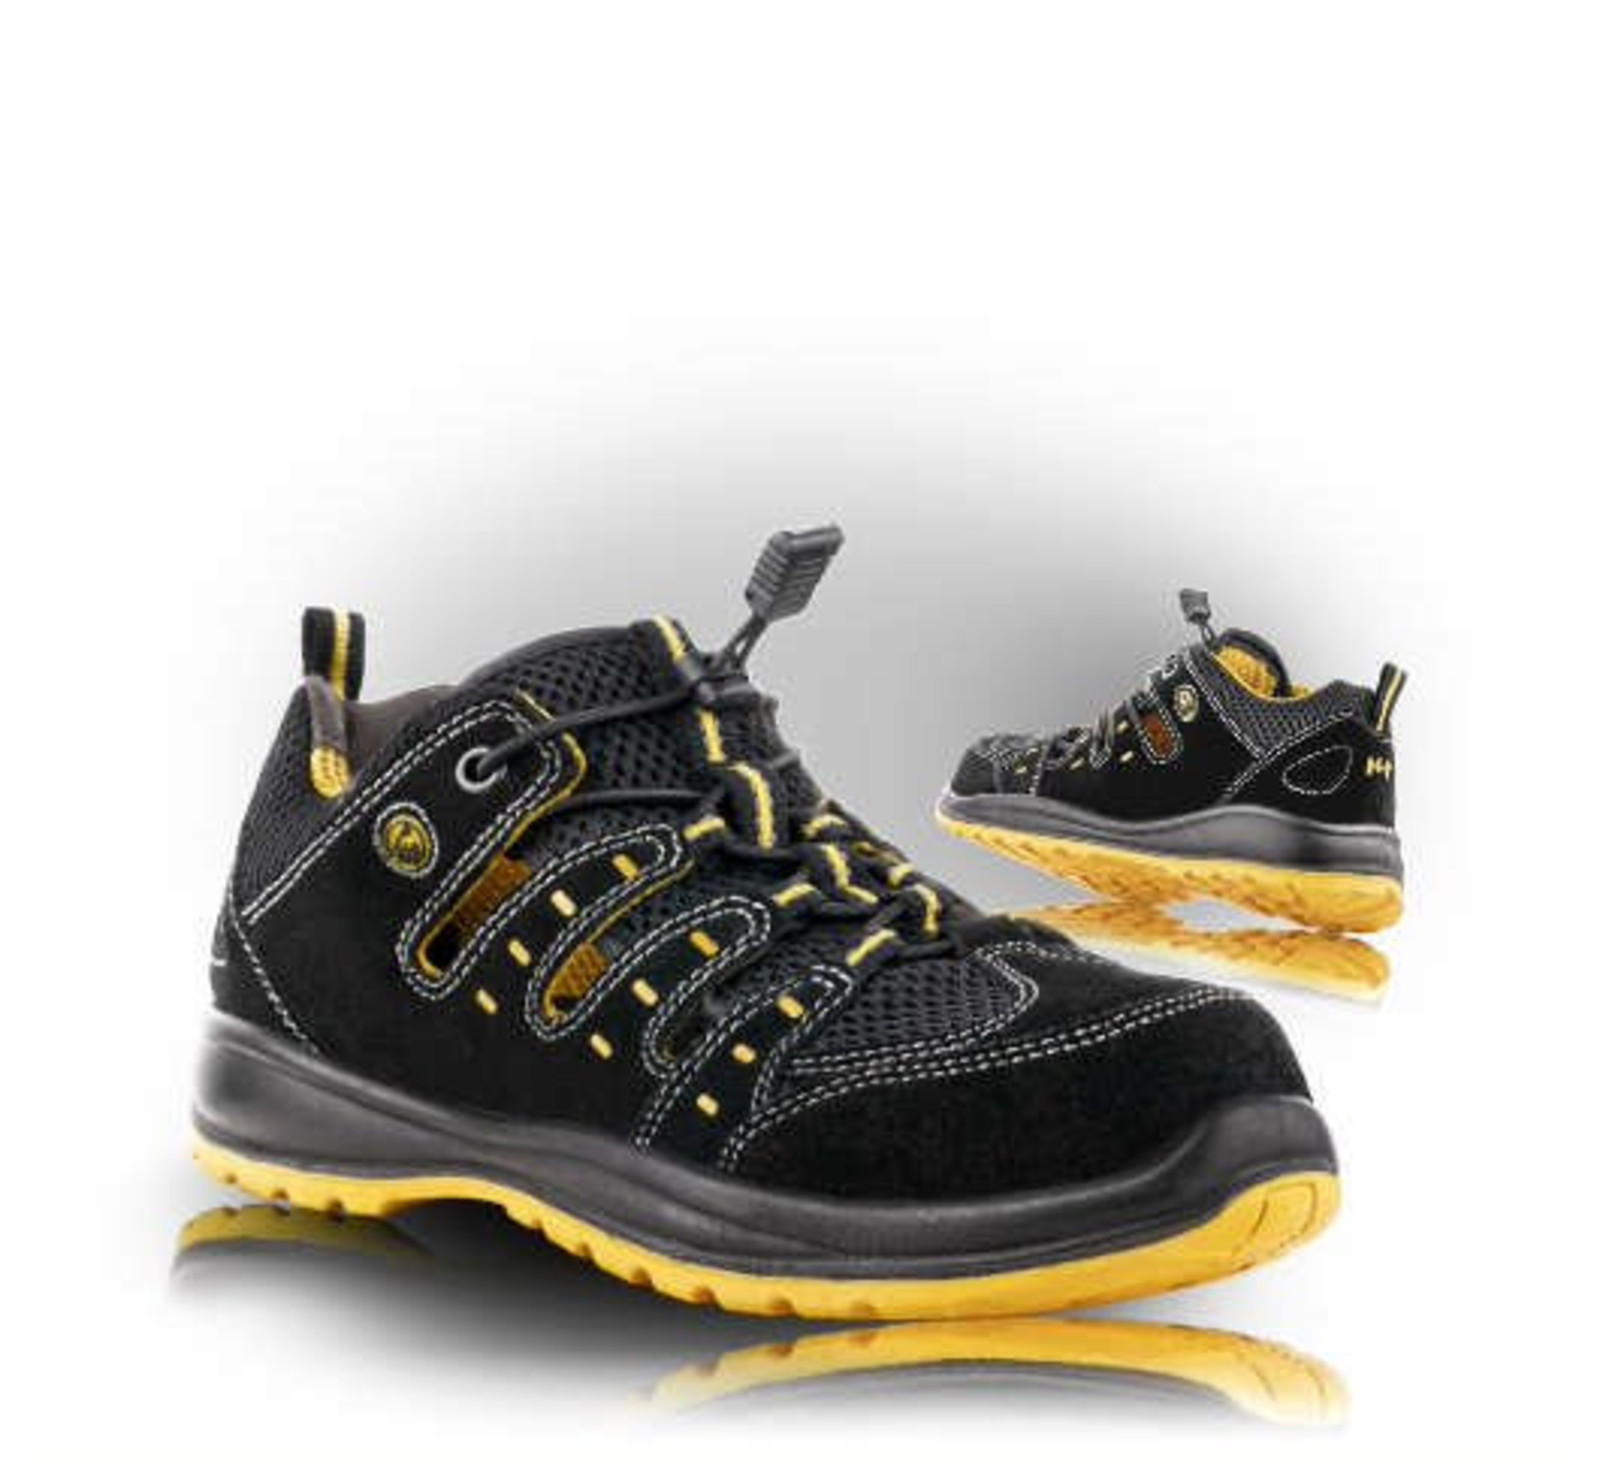 Bezpečnostné sandále Memphis S1 ESD - veľkosť: 41, farba: čierna/žltá